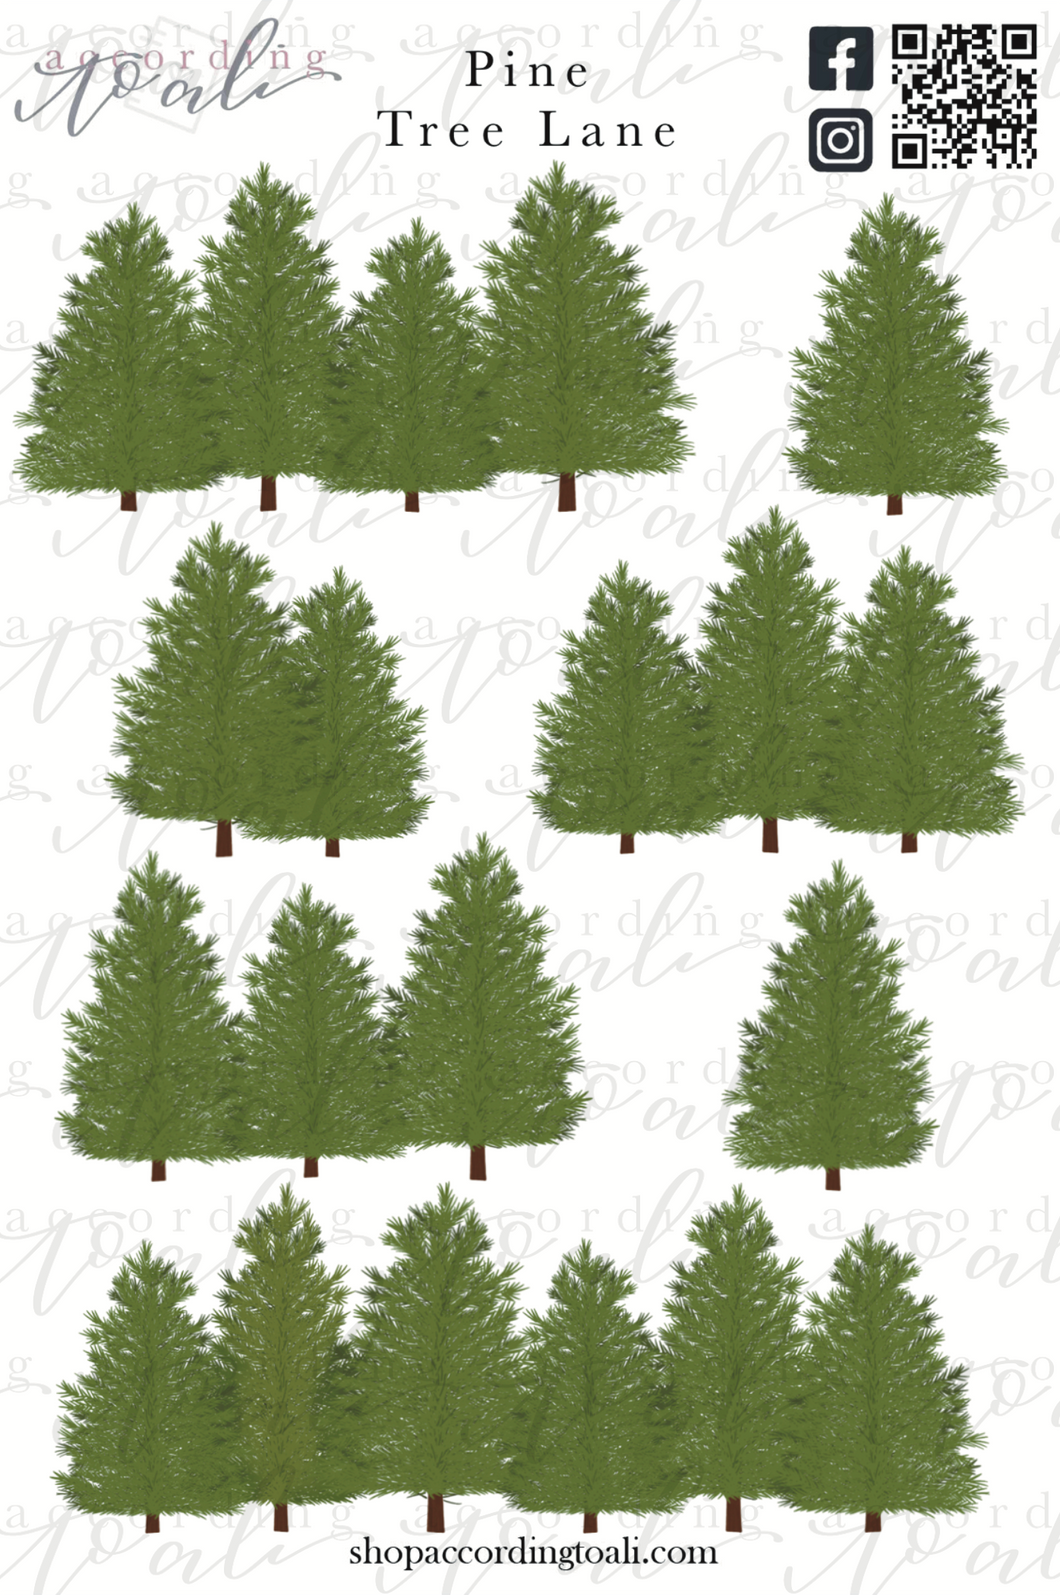 Pine Tree Lane Sticker Sheet